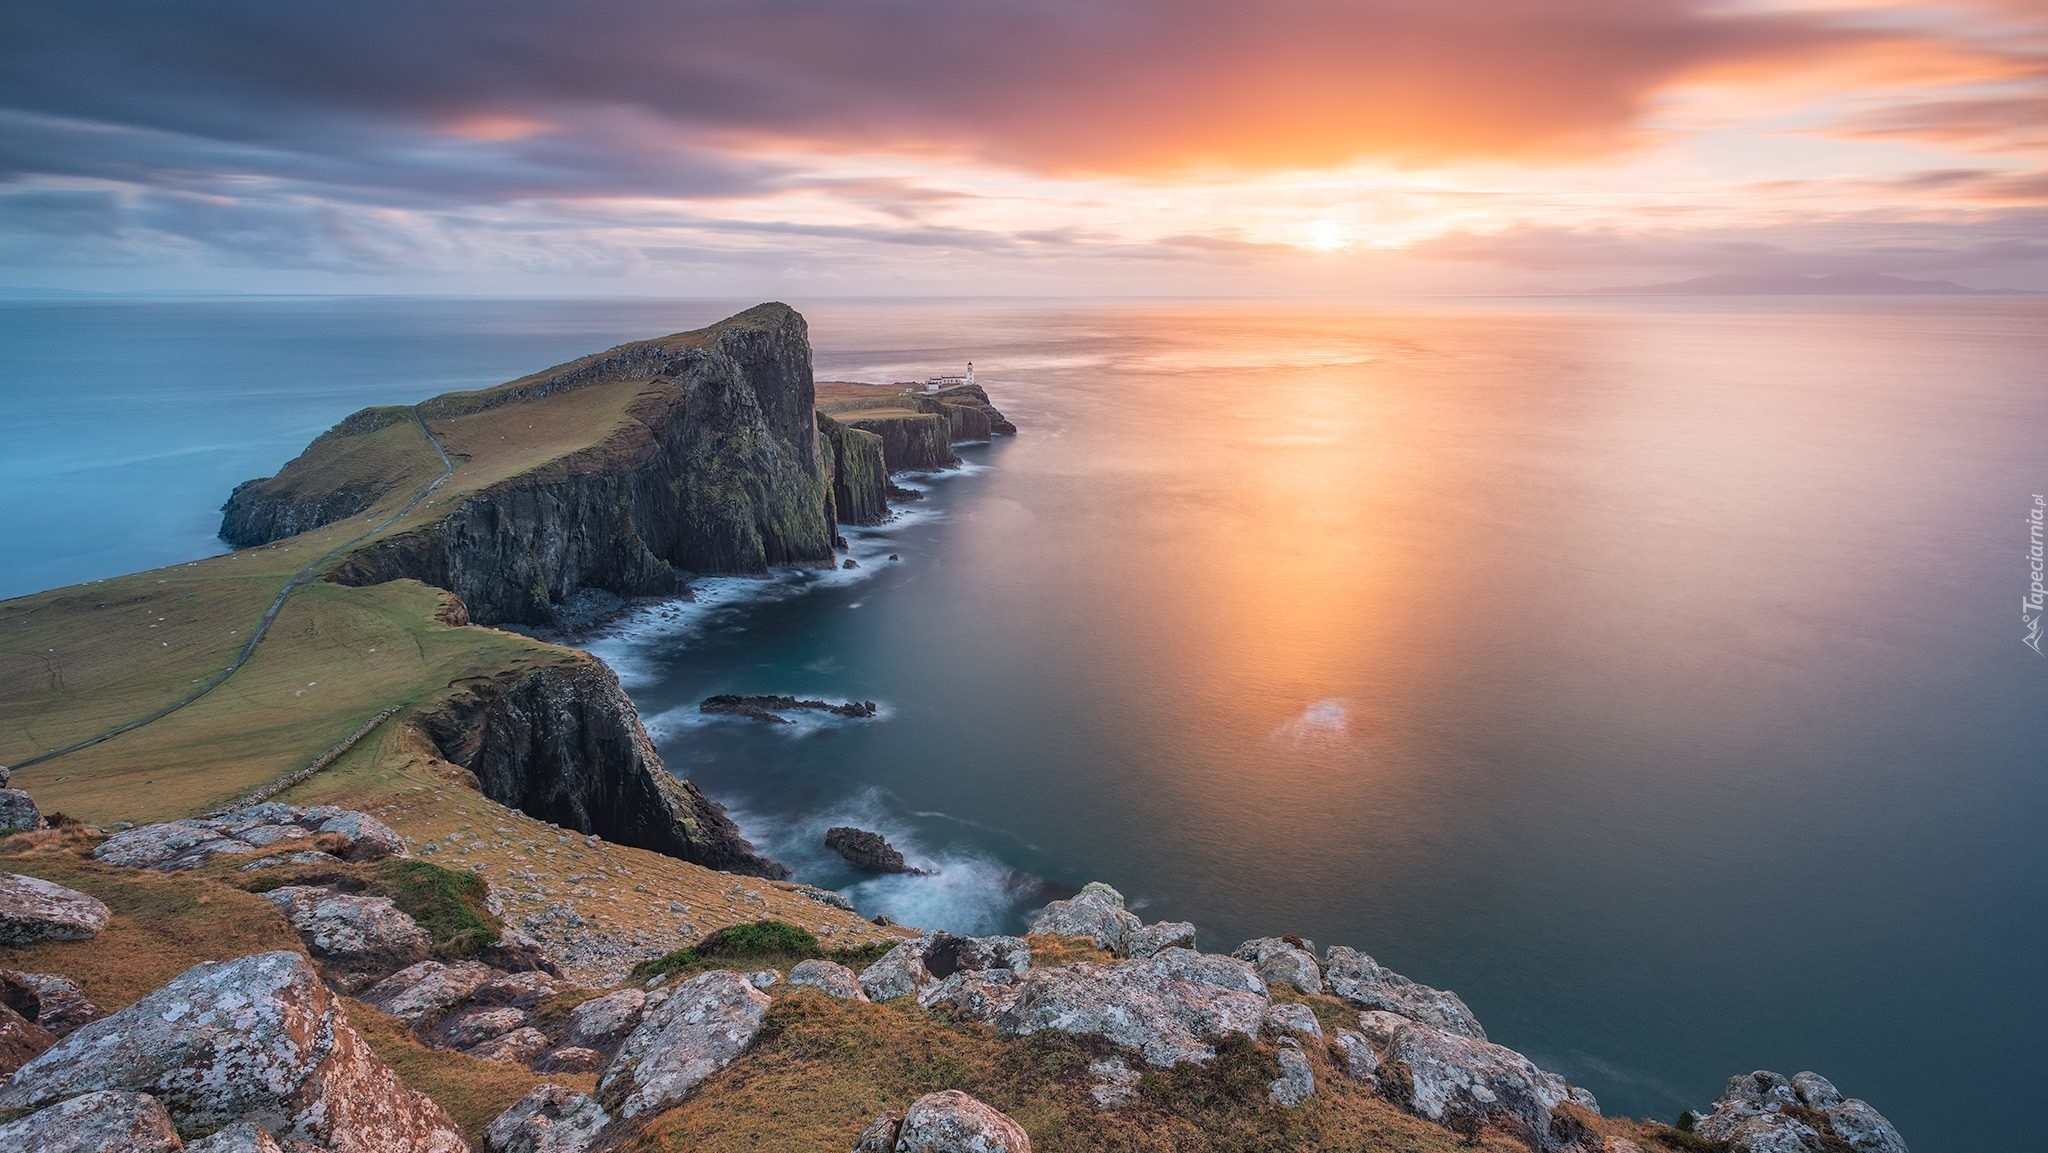 Wybrzeże, Morze Szkockie, Skały, Wyspa Skye, Klif, Latarnia morska, Neist Point Lighthouse, Wschód słońca, Chmury, Półwysep Duirinish, Szkocja